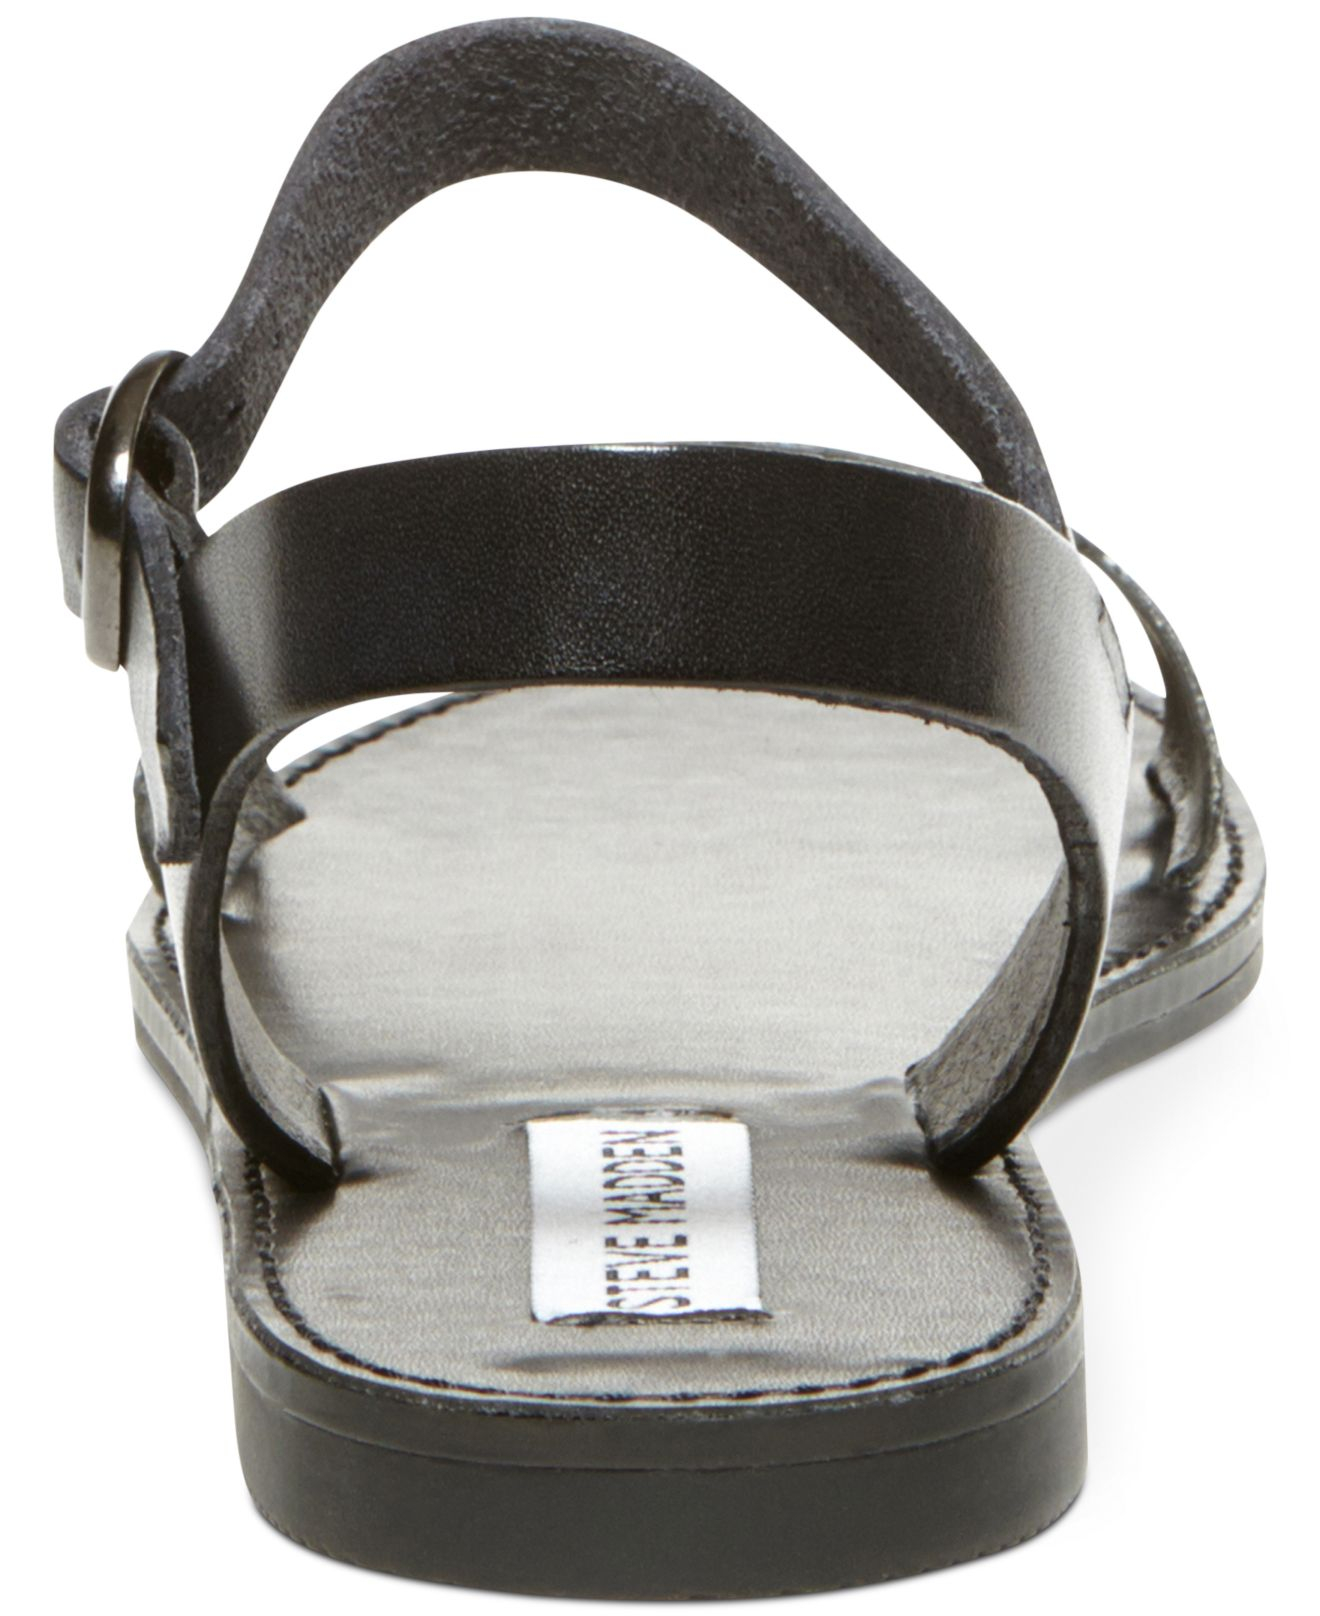 Lyst - Steve Madden Donddi Flat Sandals in Black